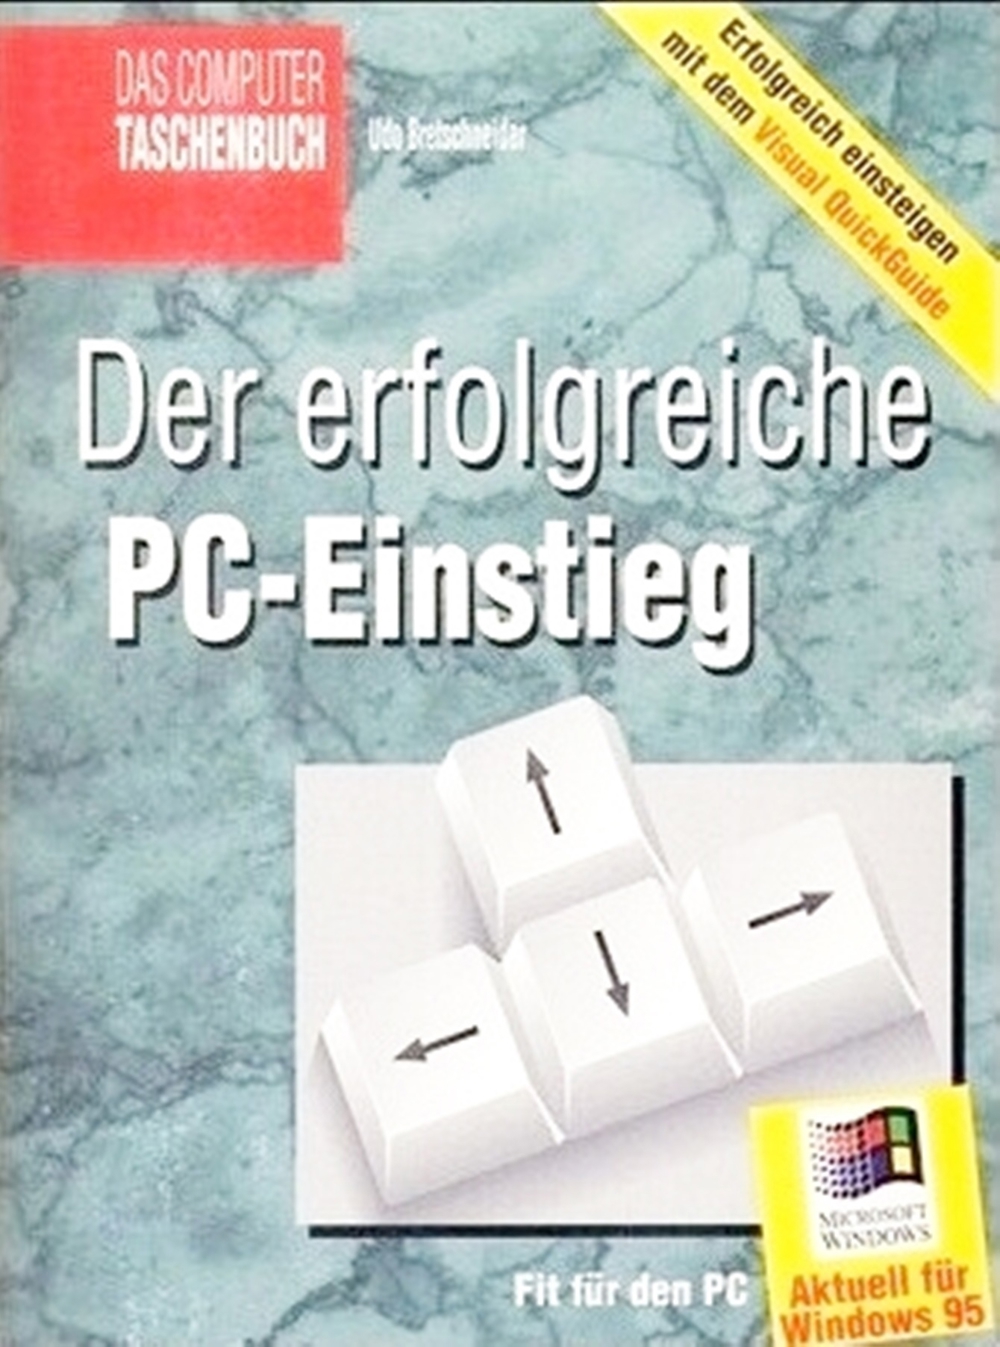 Der erfolgreiche PC-Einstieg, Fit für den PC - Aktuell für Windows 95